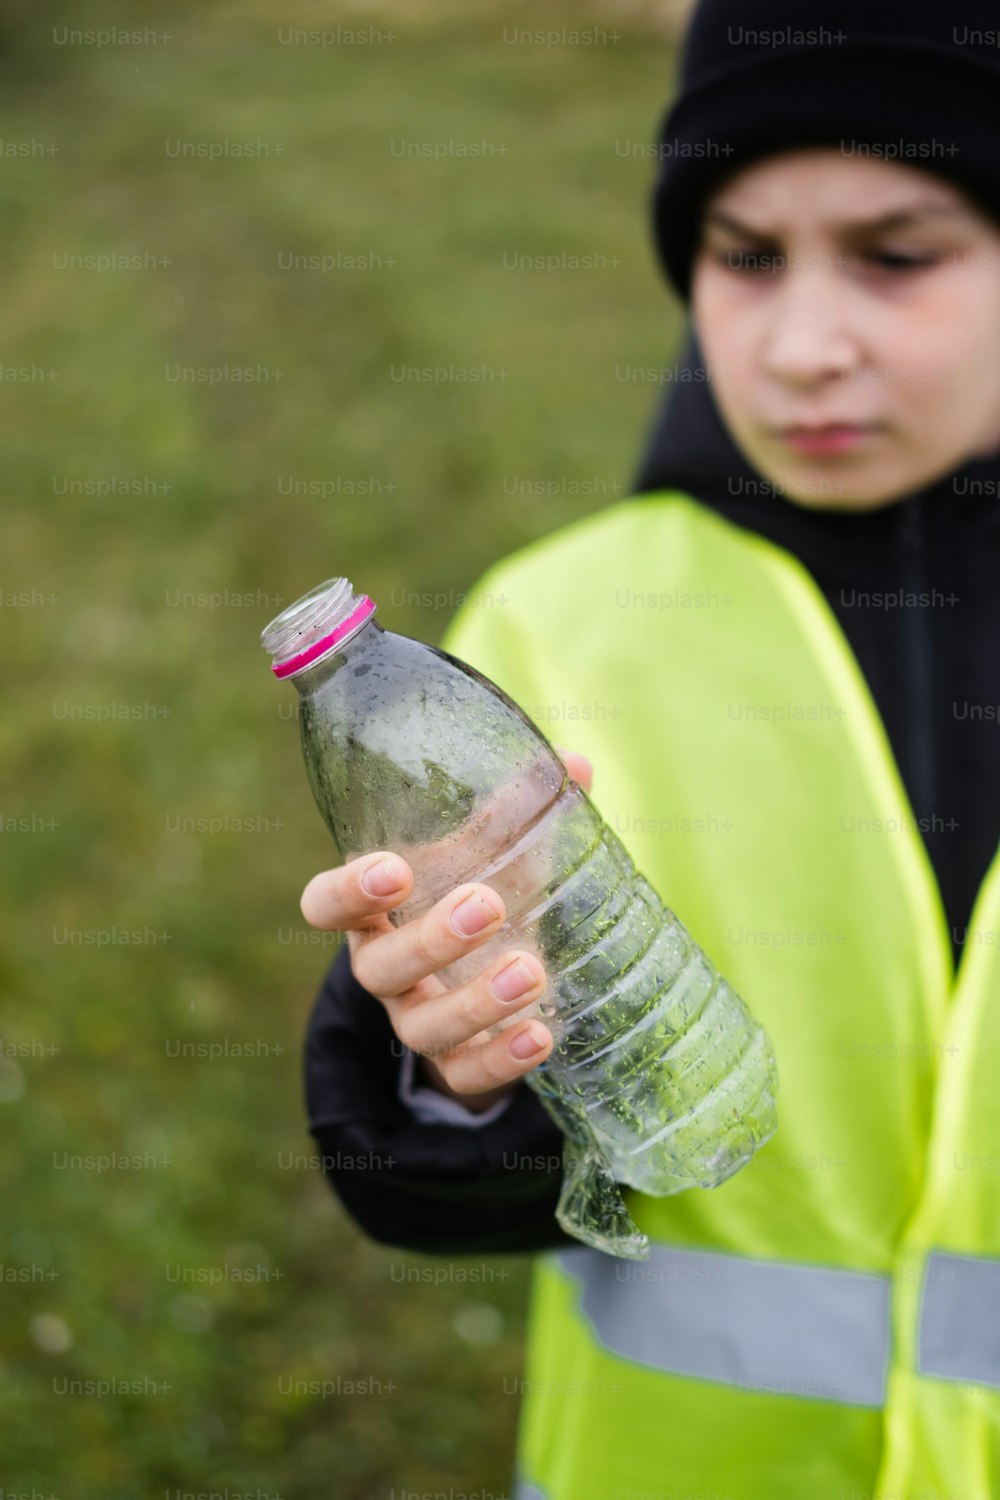 eine Person in einer gelben Weste, die eine Wasserflasche hält